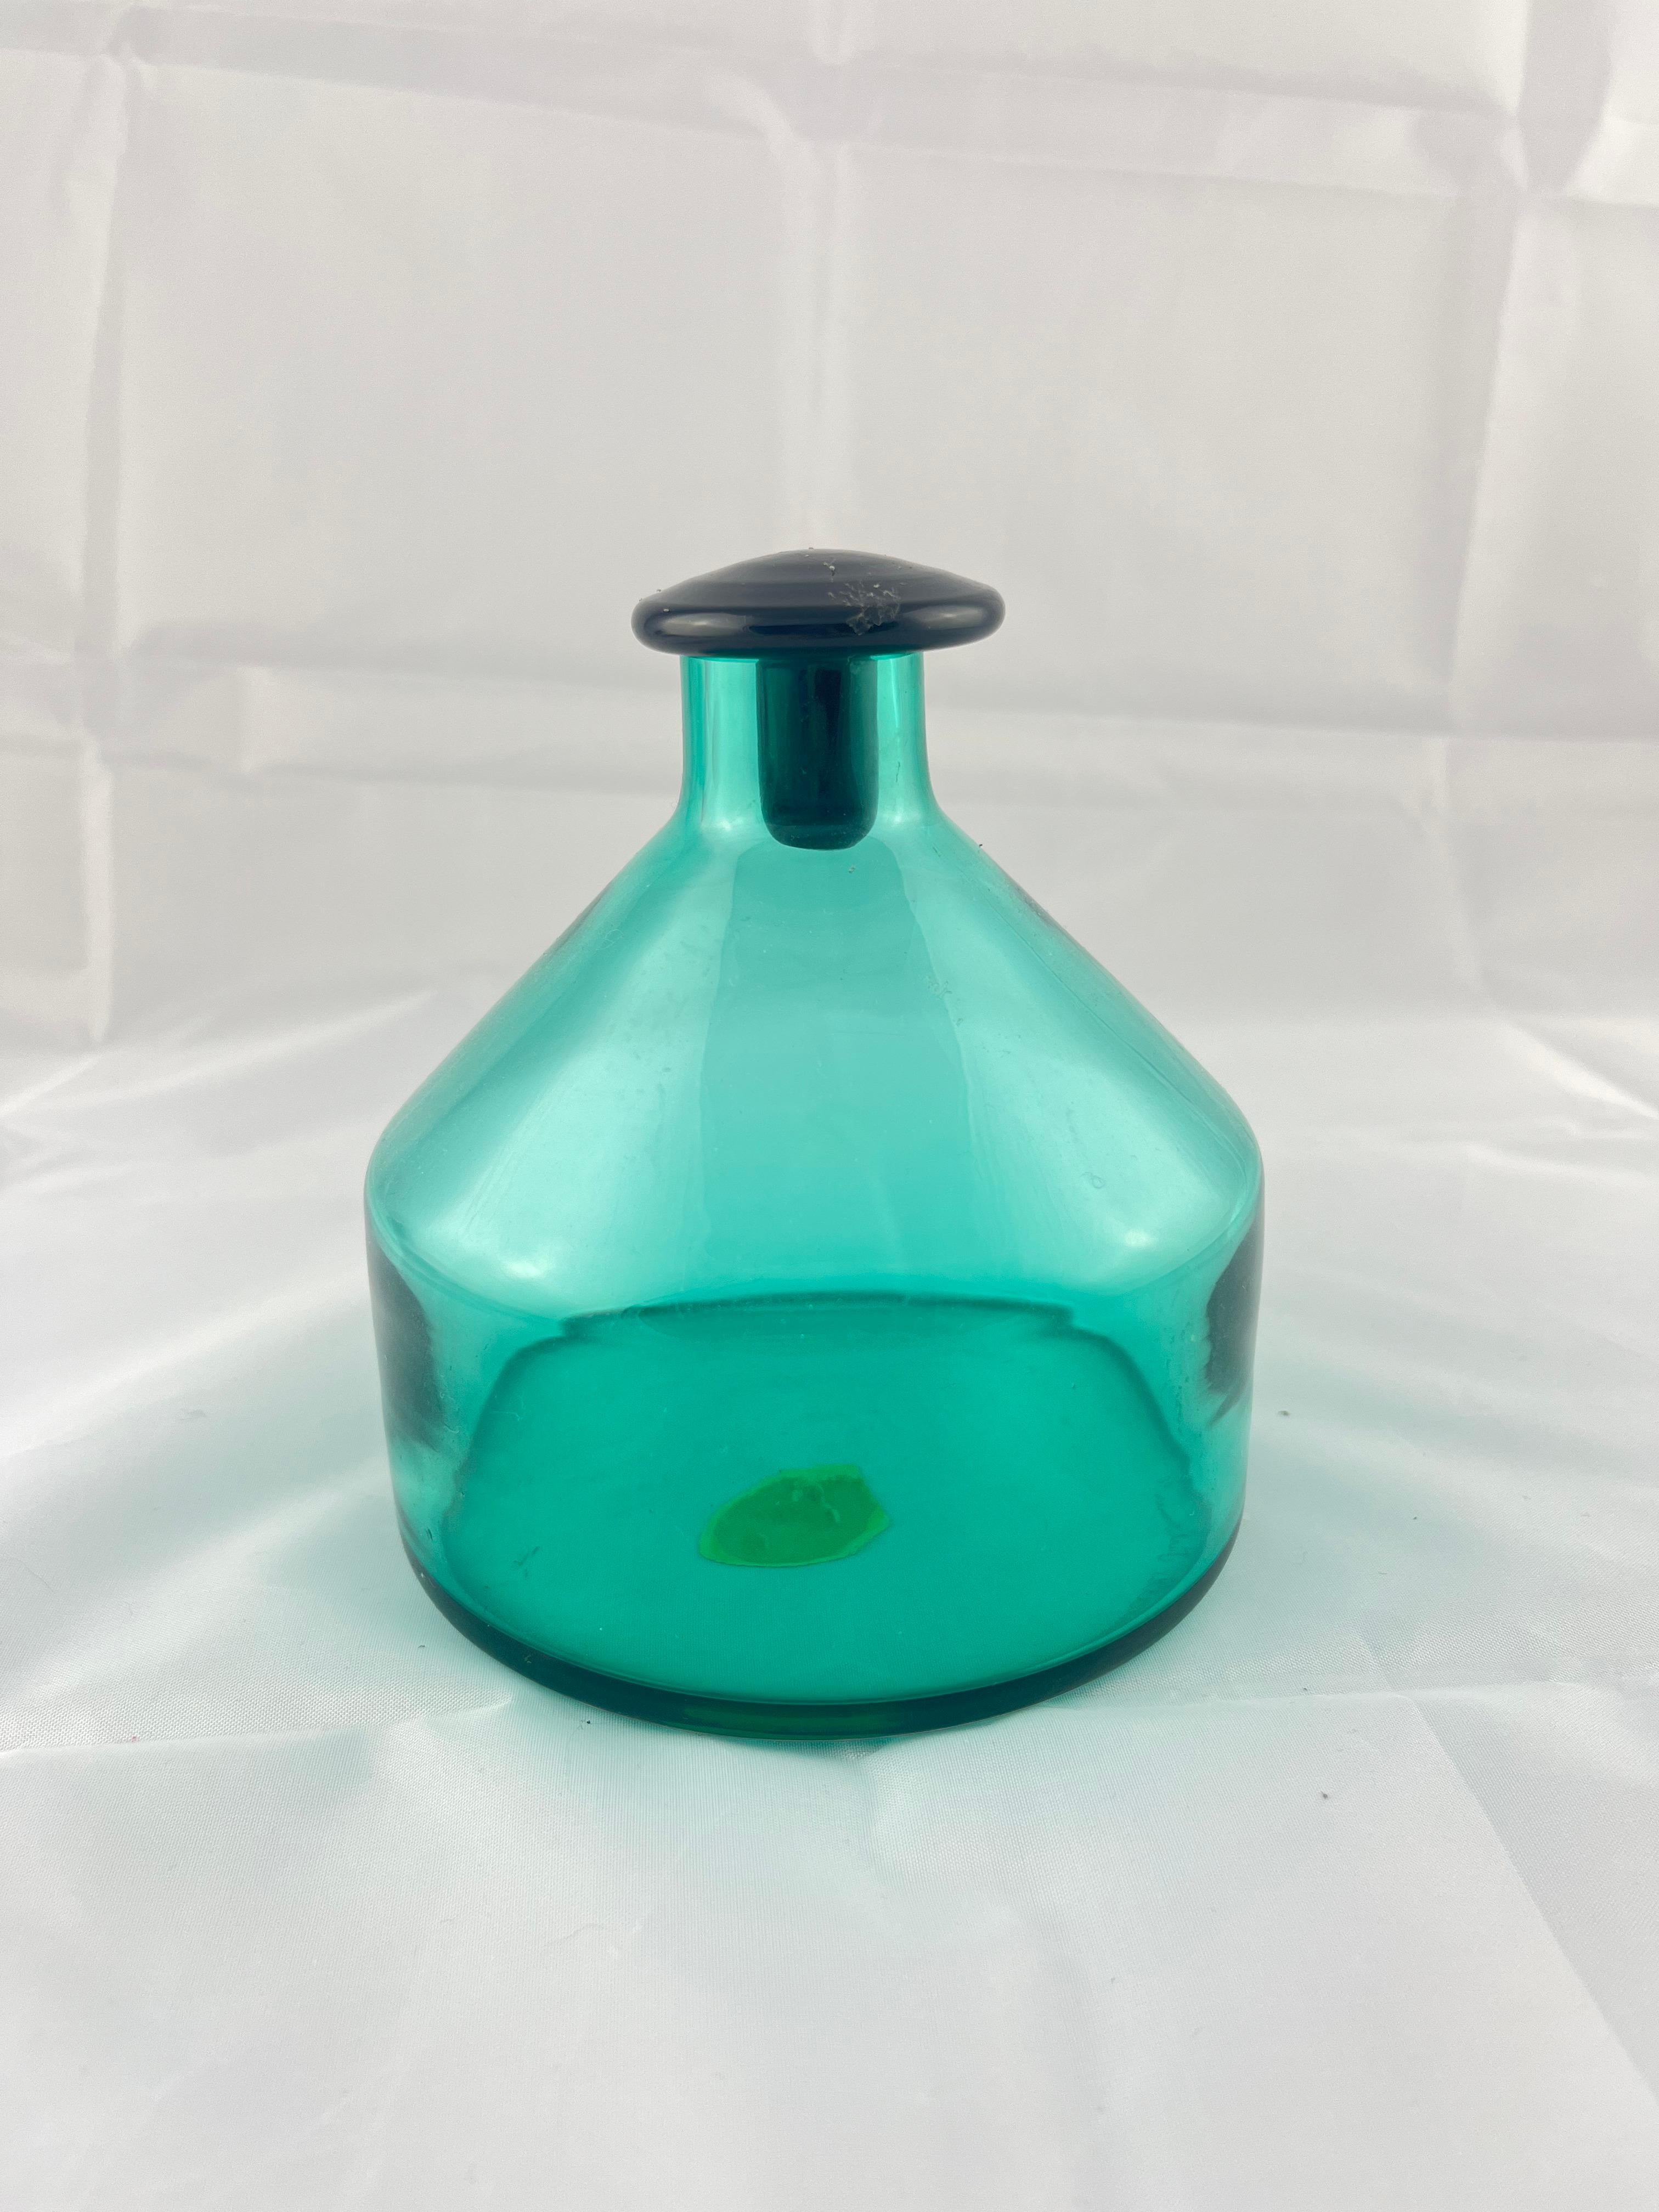 Piccolo vaso in vetro di Murano firmato all'acido Marcello Furlan - 1990

En très bonnes conditions